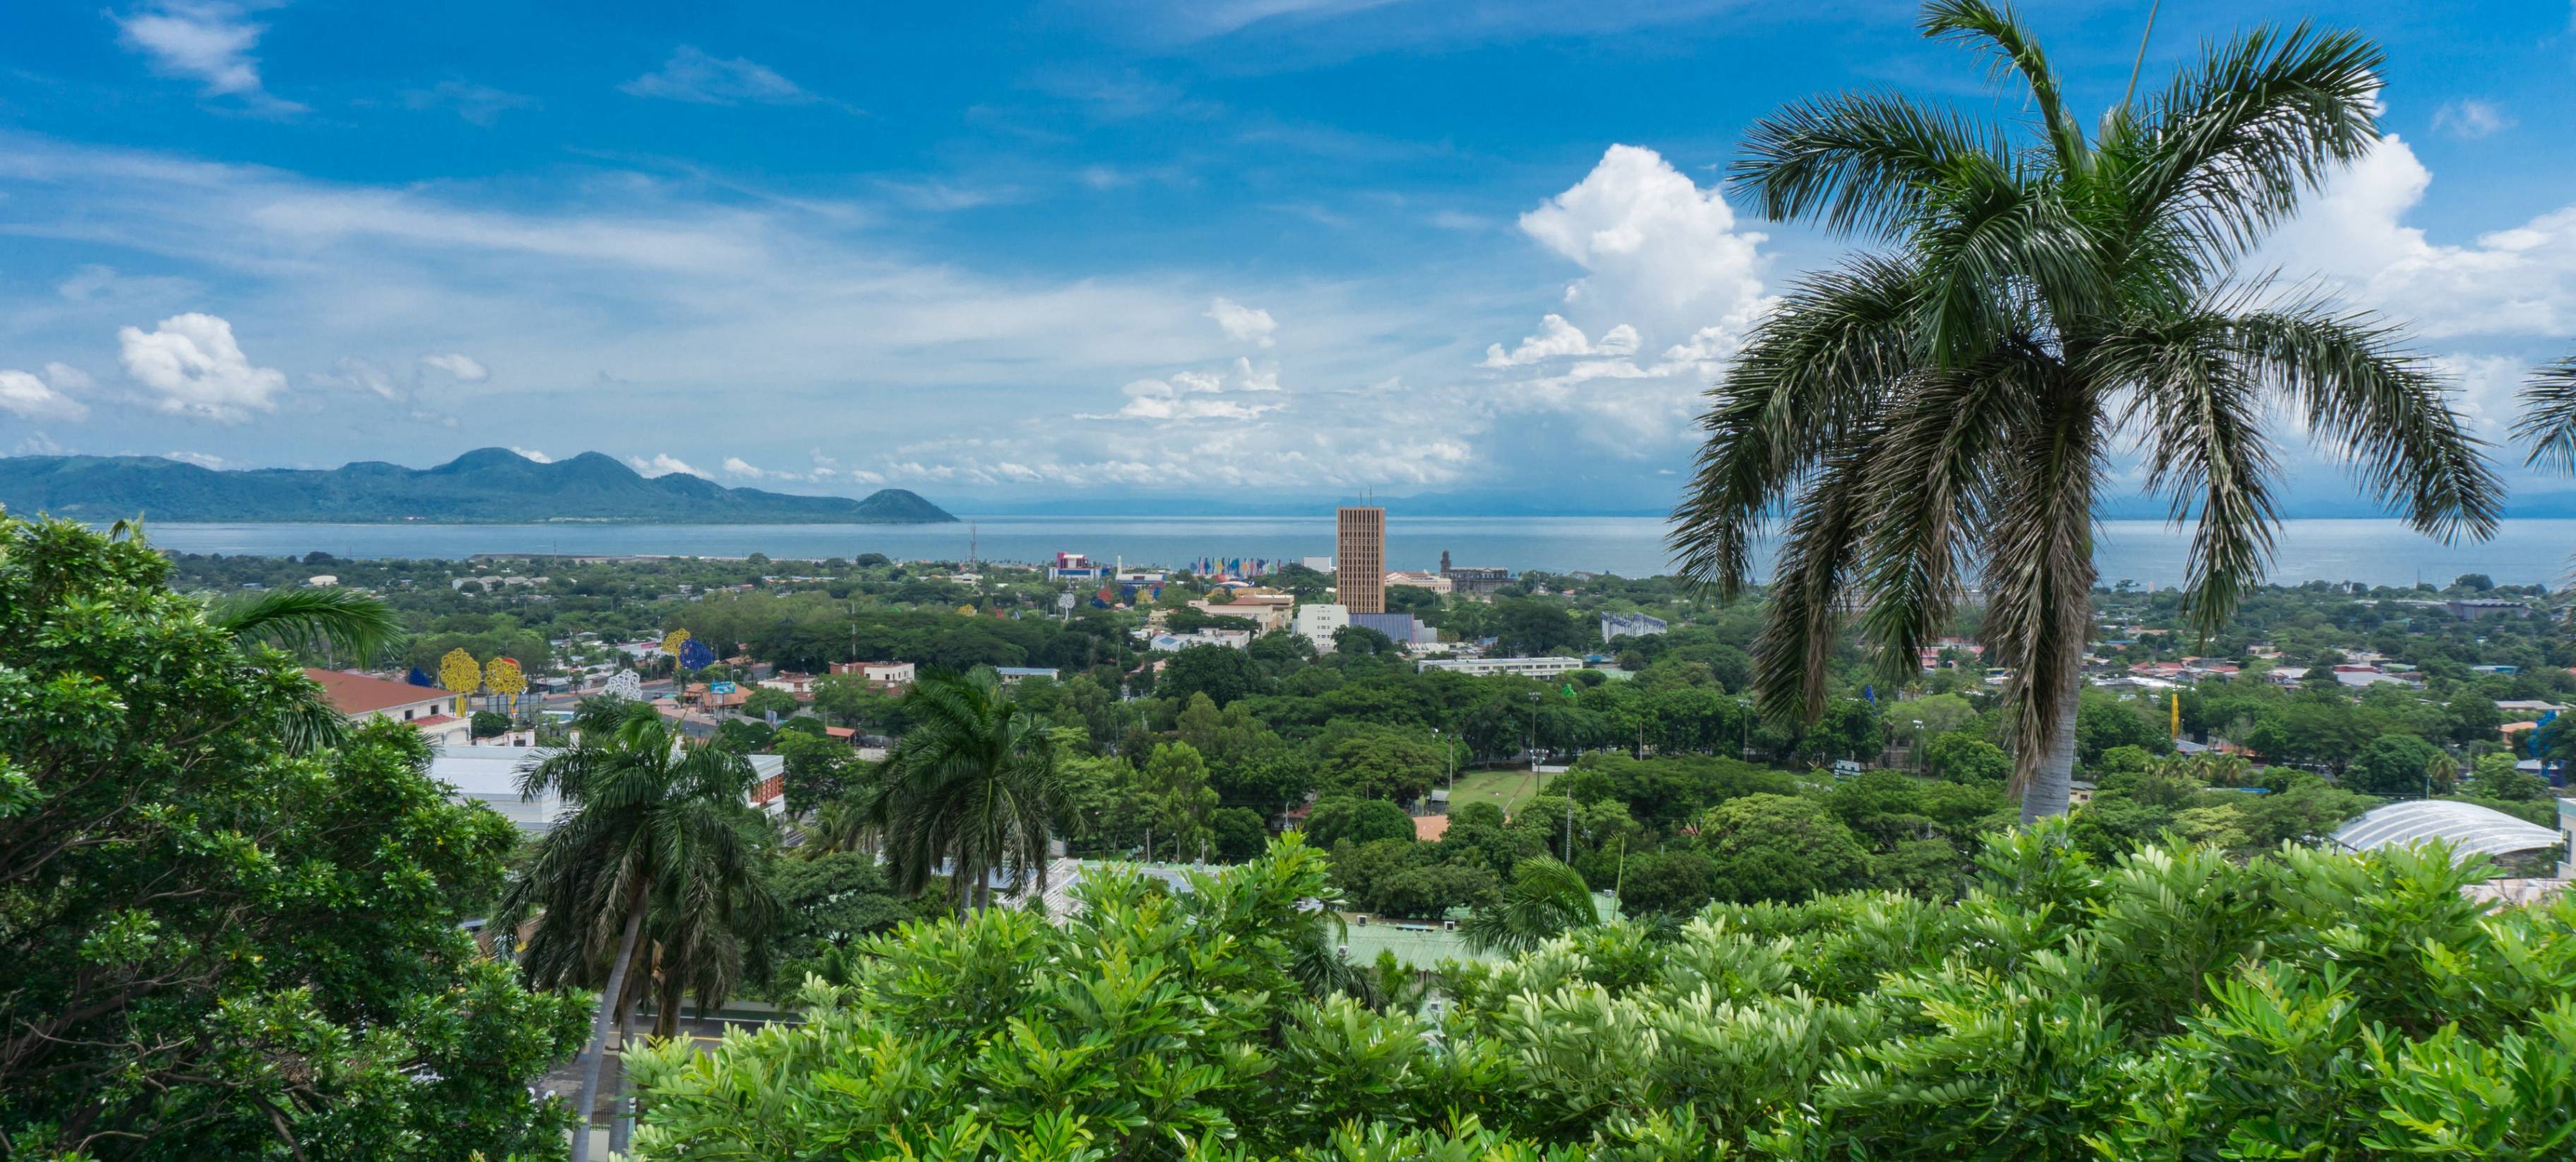 Bienvenue à Managua